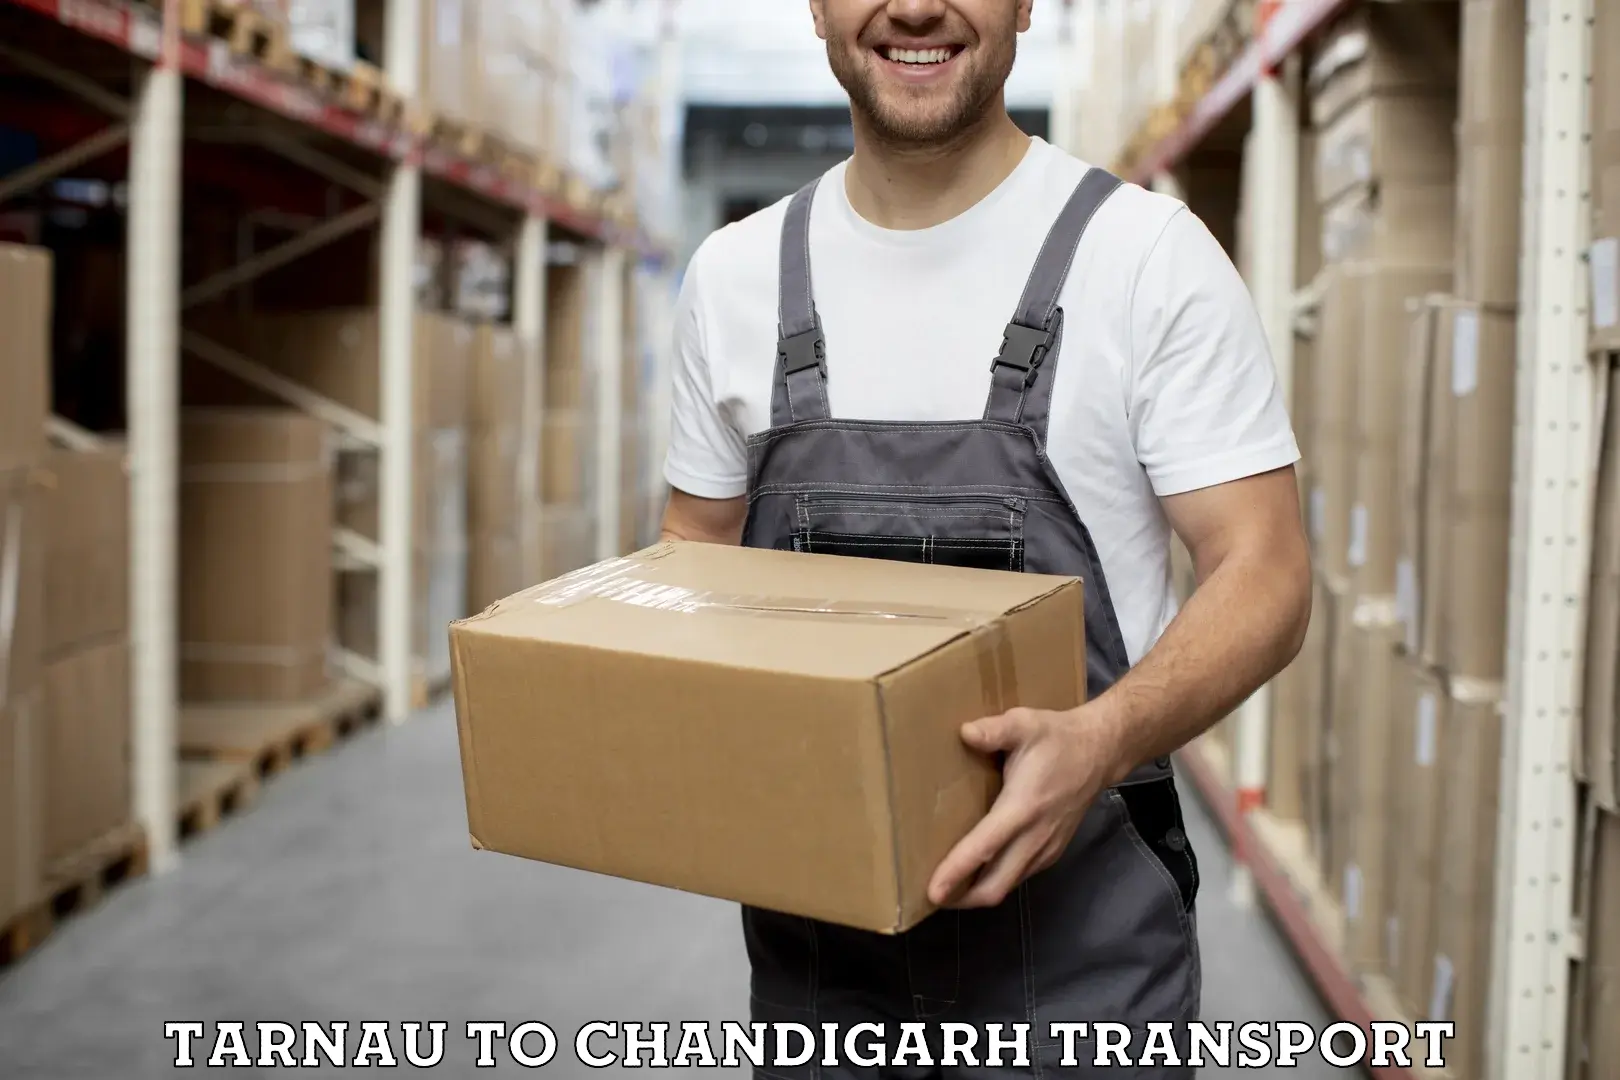 Online transport service Tarnau to Chandigarh